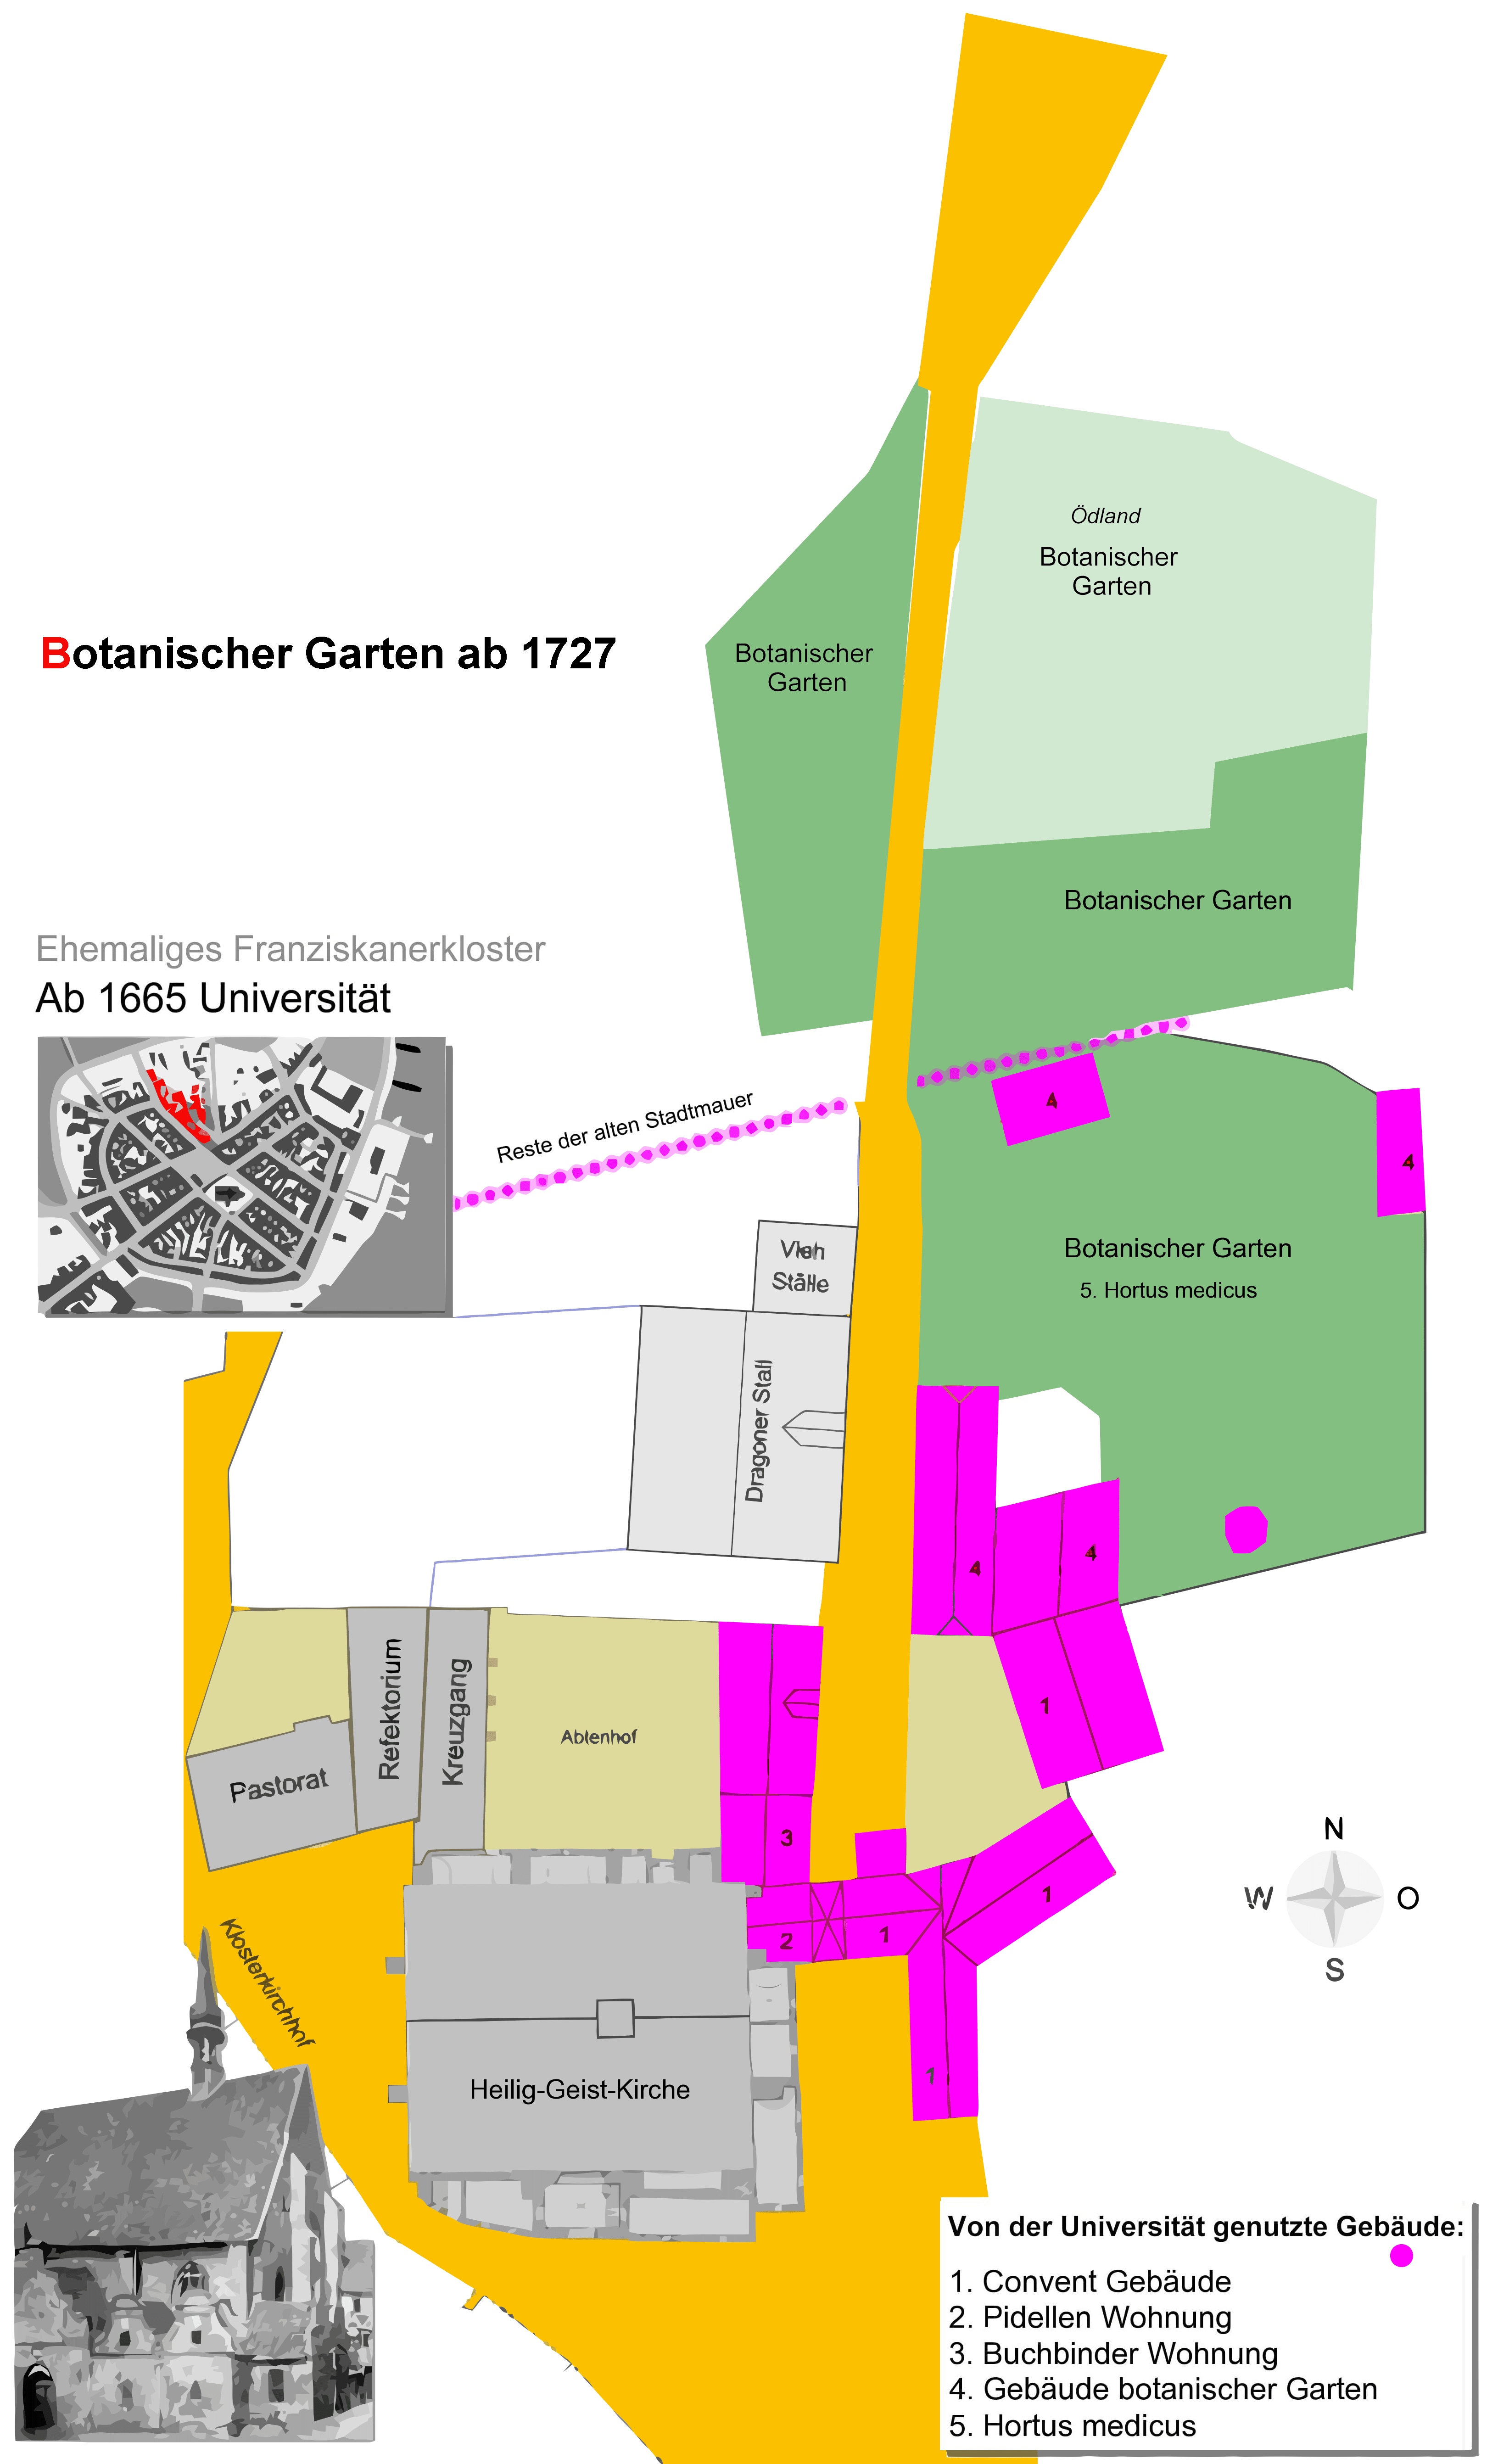 Lageplan-1. Botanischer Garten in Kiel 1727